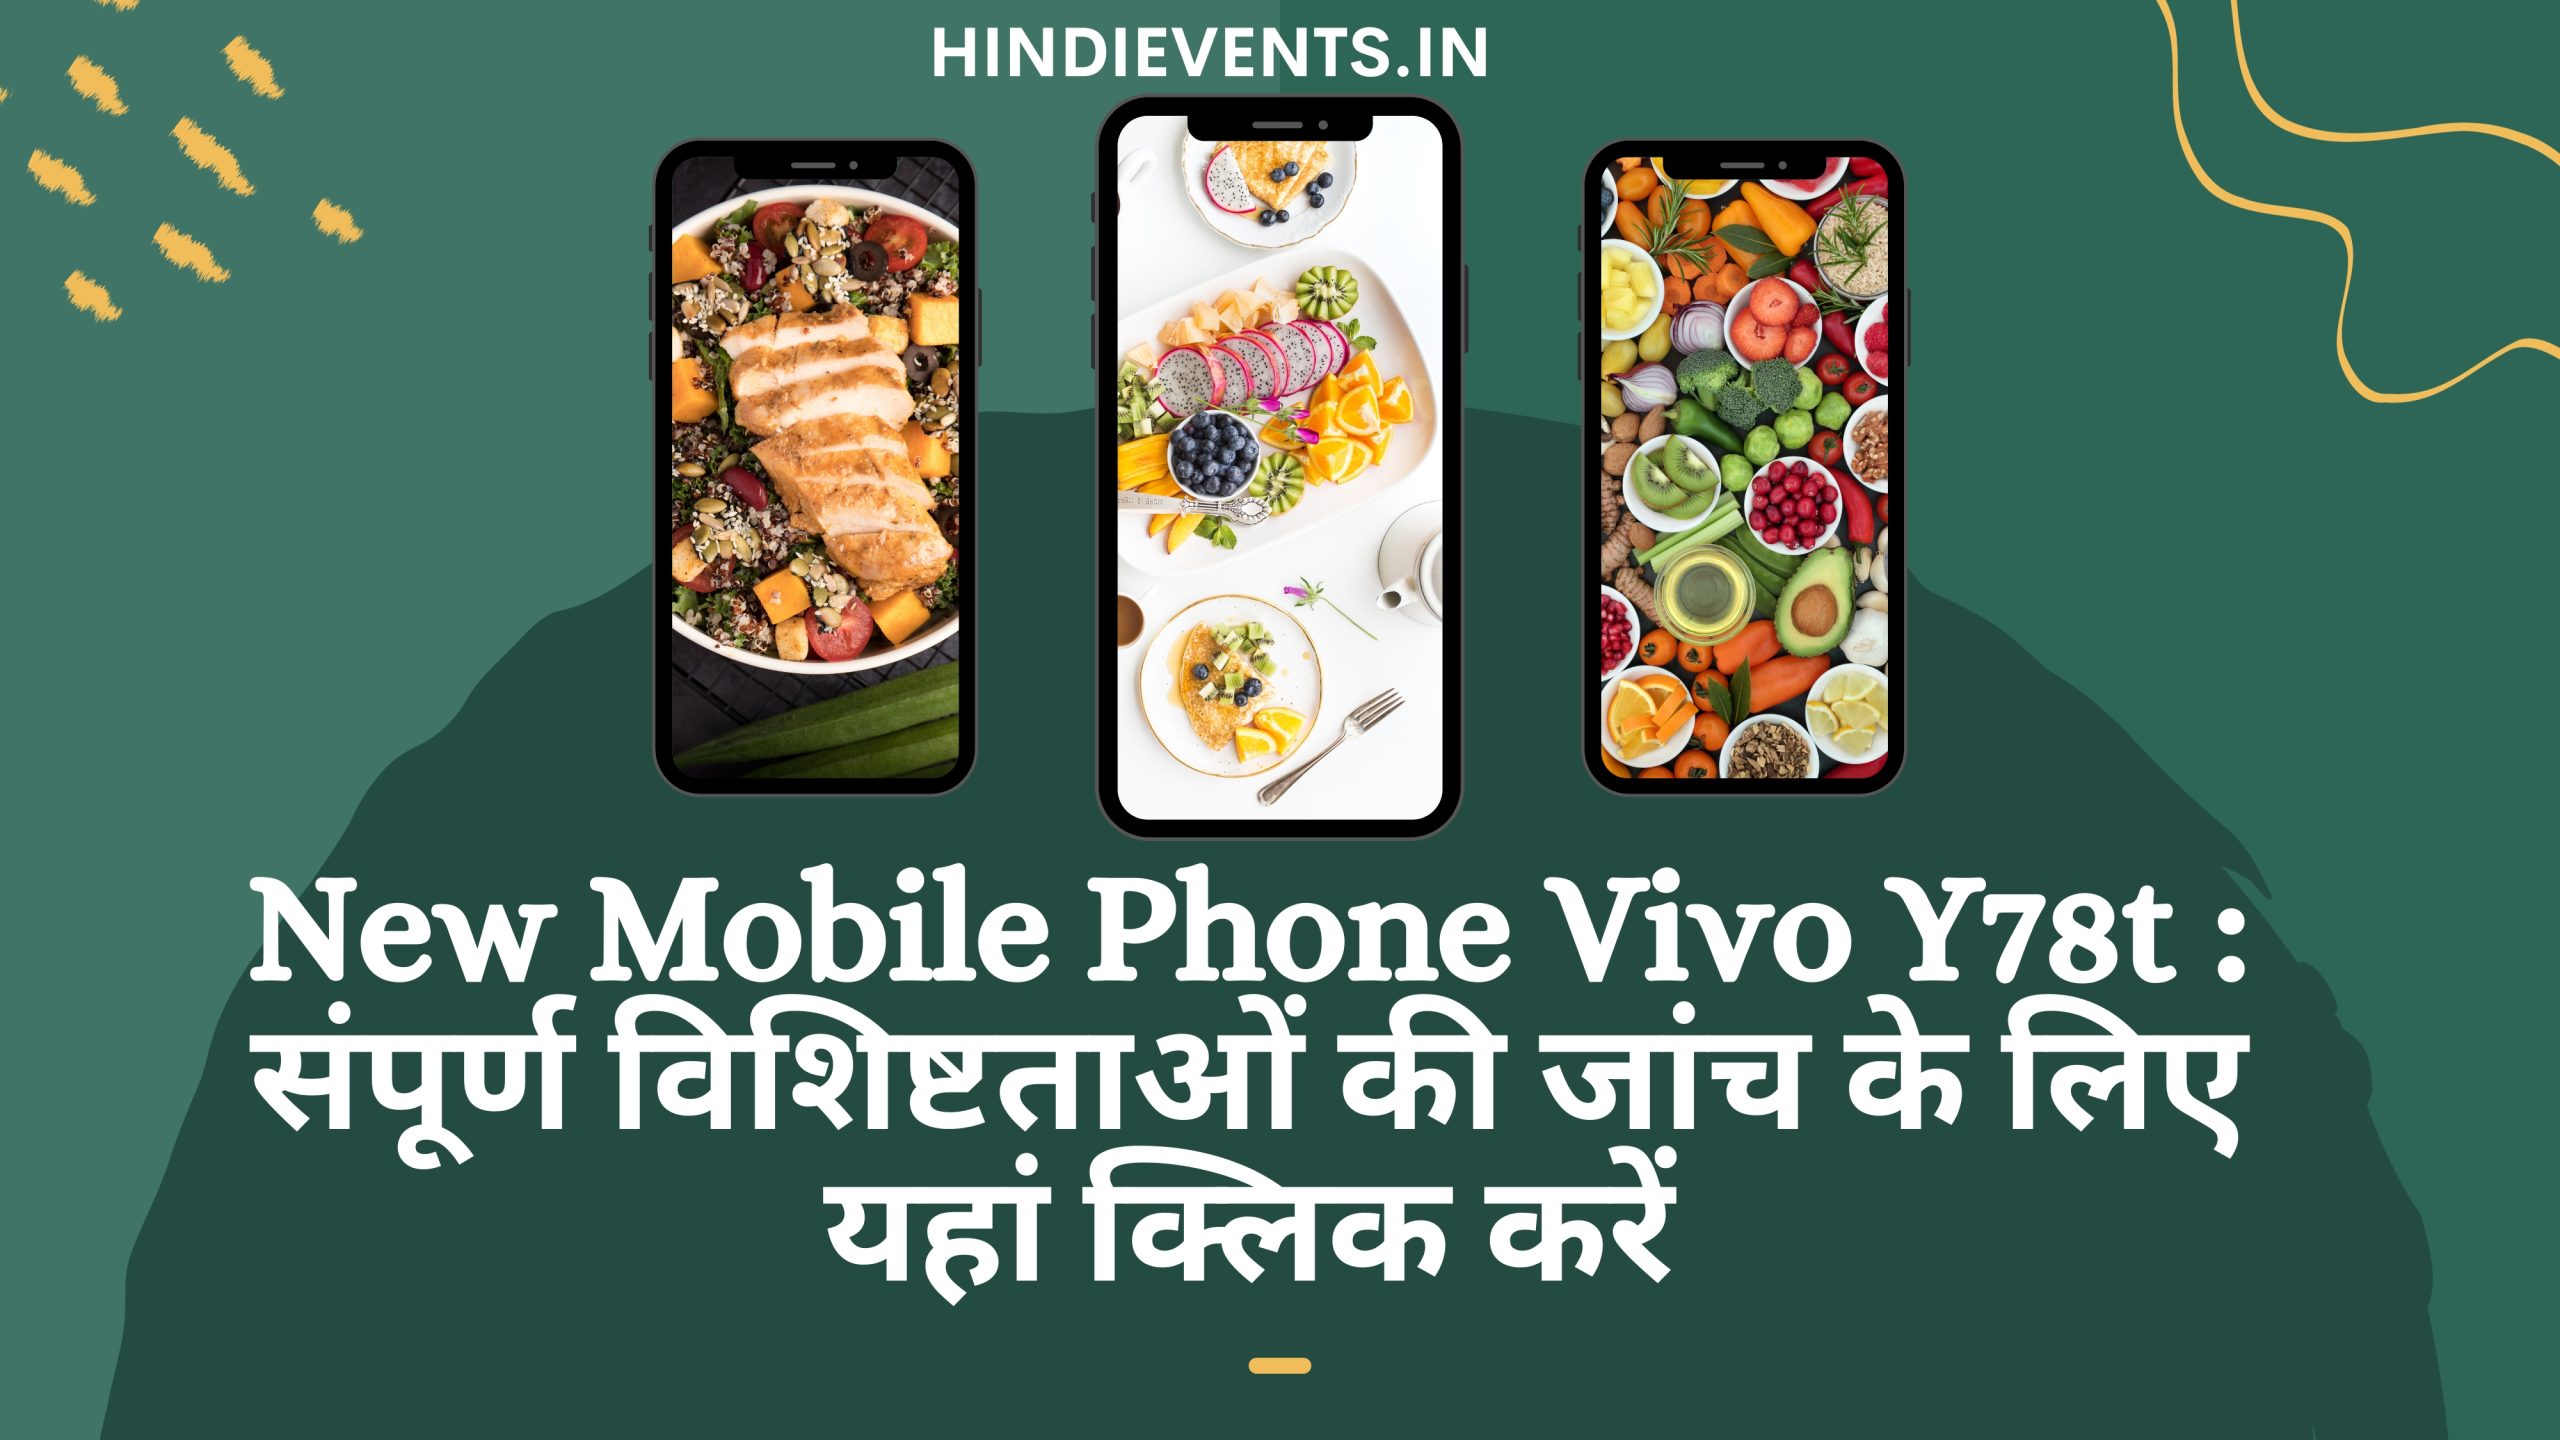 New Mobile Phone Vivo Y78t : संपूर्ण विशिष्टताओं की जांच के लिए यहां क्लिक करें